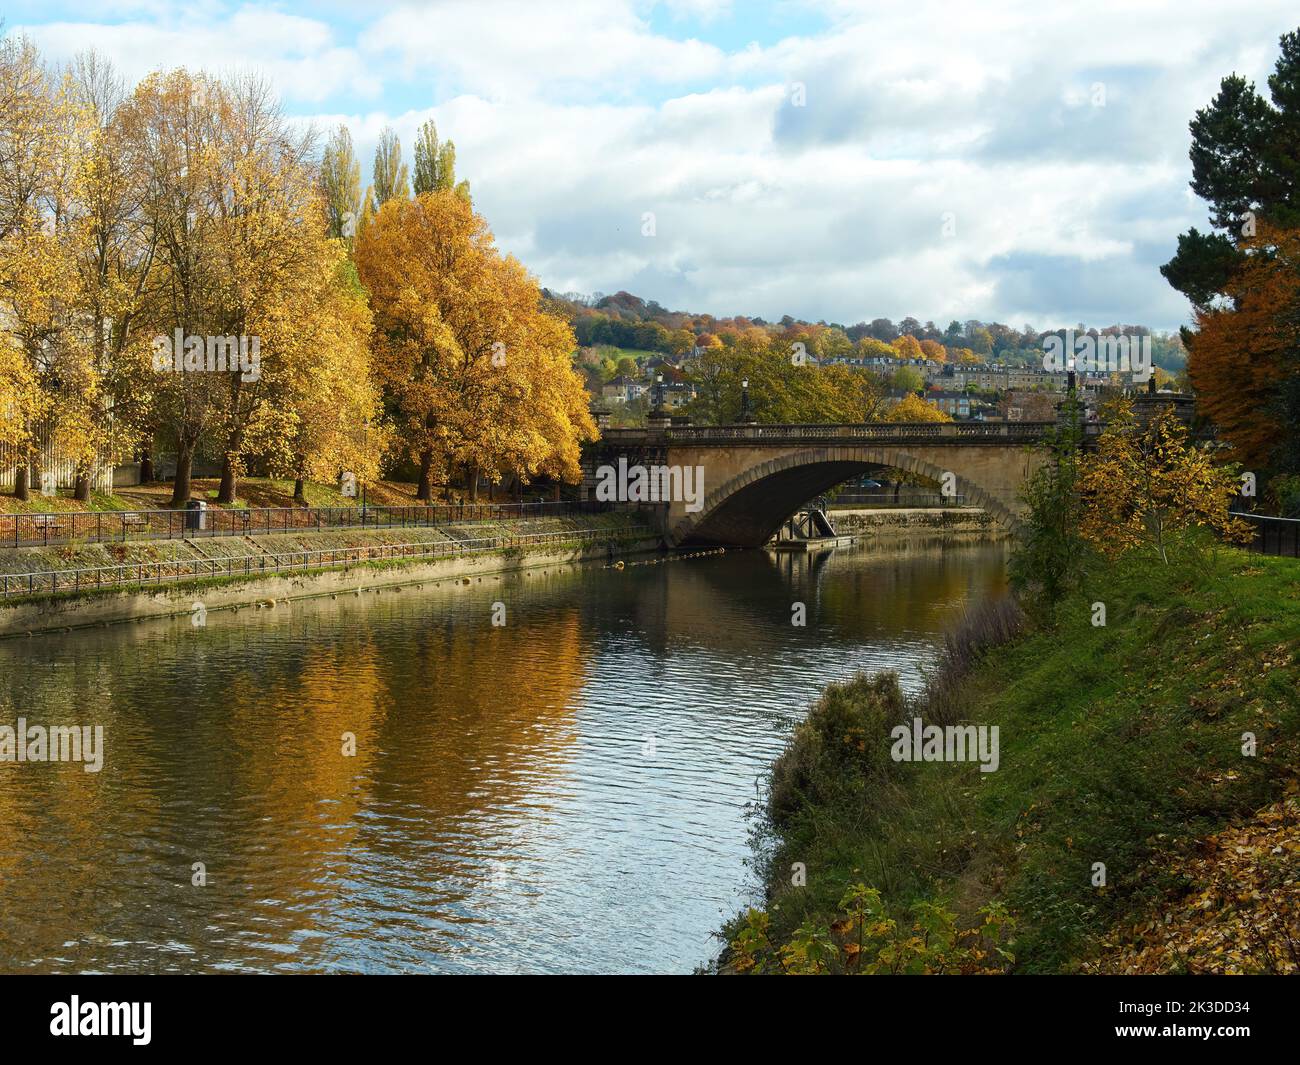 Bain d'automne - la rivière Avon passant sous un pont en pierre et reflétant les arbres ensoleillées dans la couleur de l'automne qui s'étend sur les collines lointaines. Banque D'Images